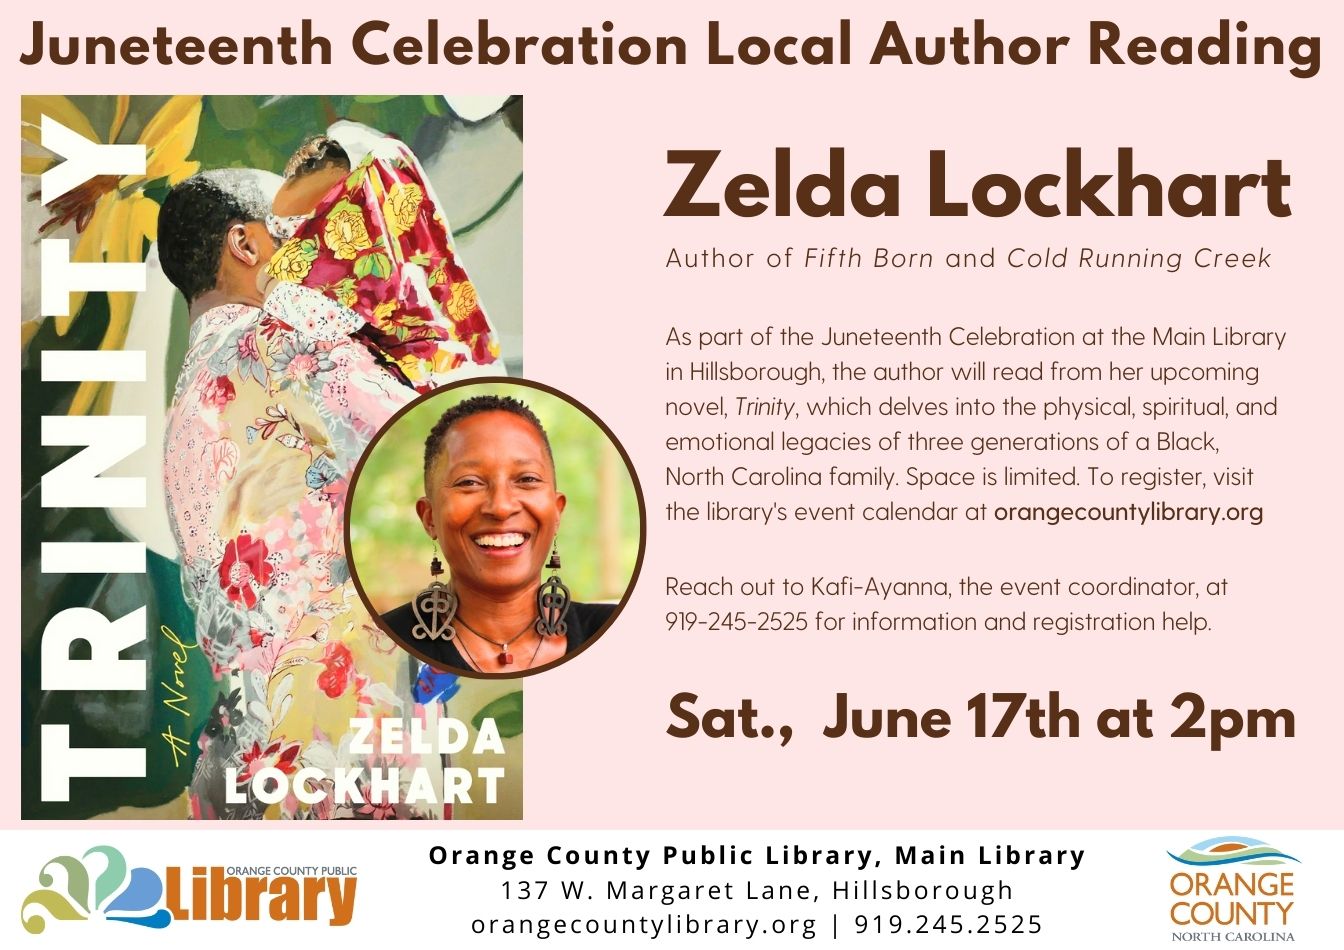 Local Author Reading: Zelda Lockhart Reading from Trinity